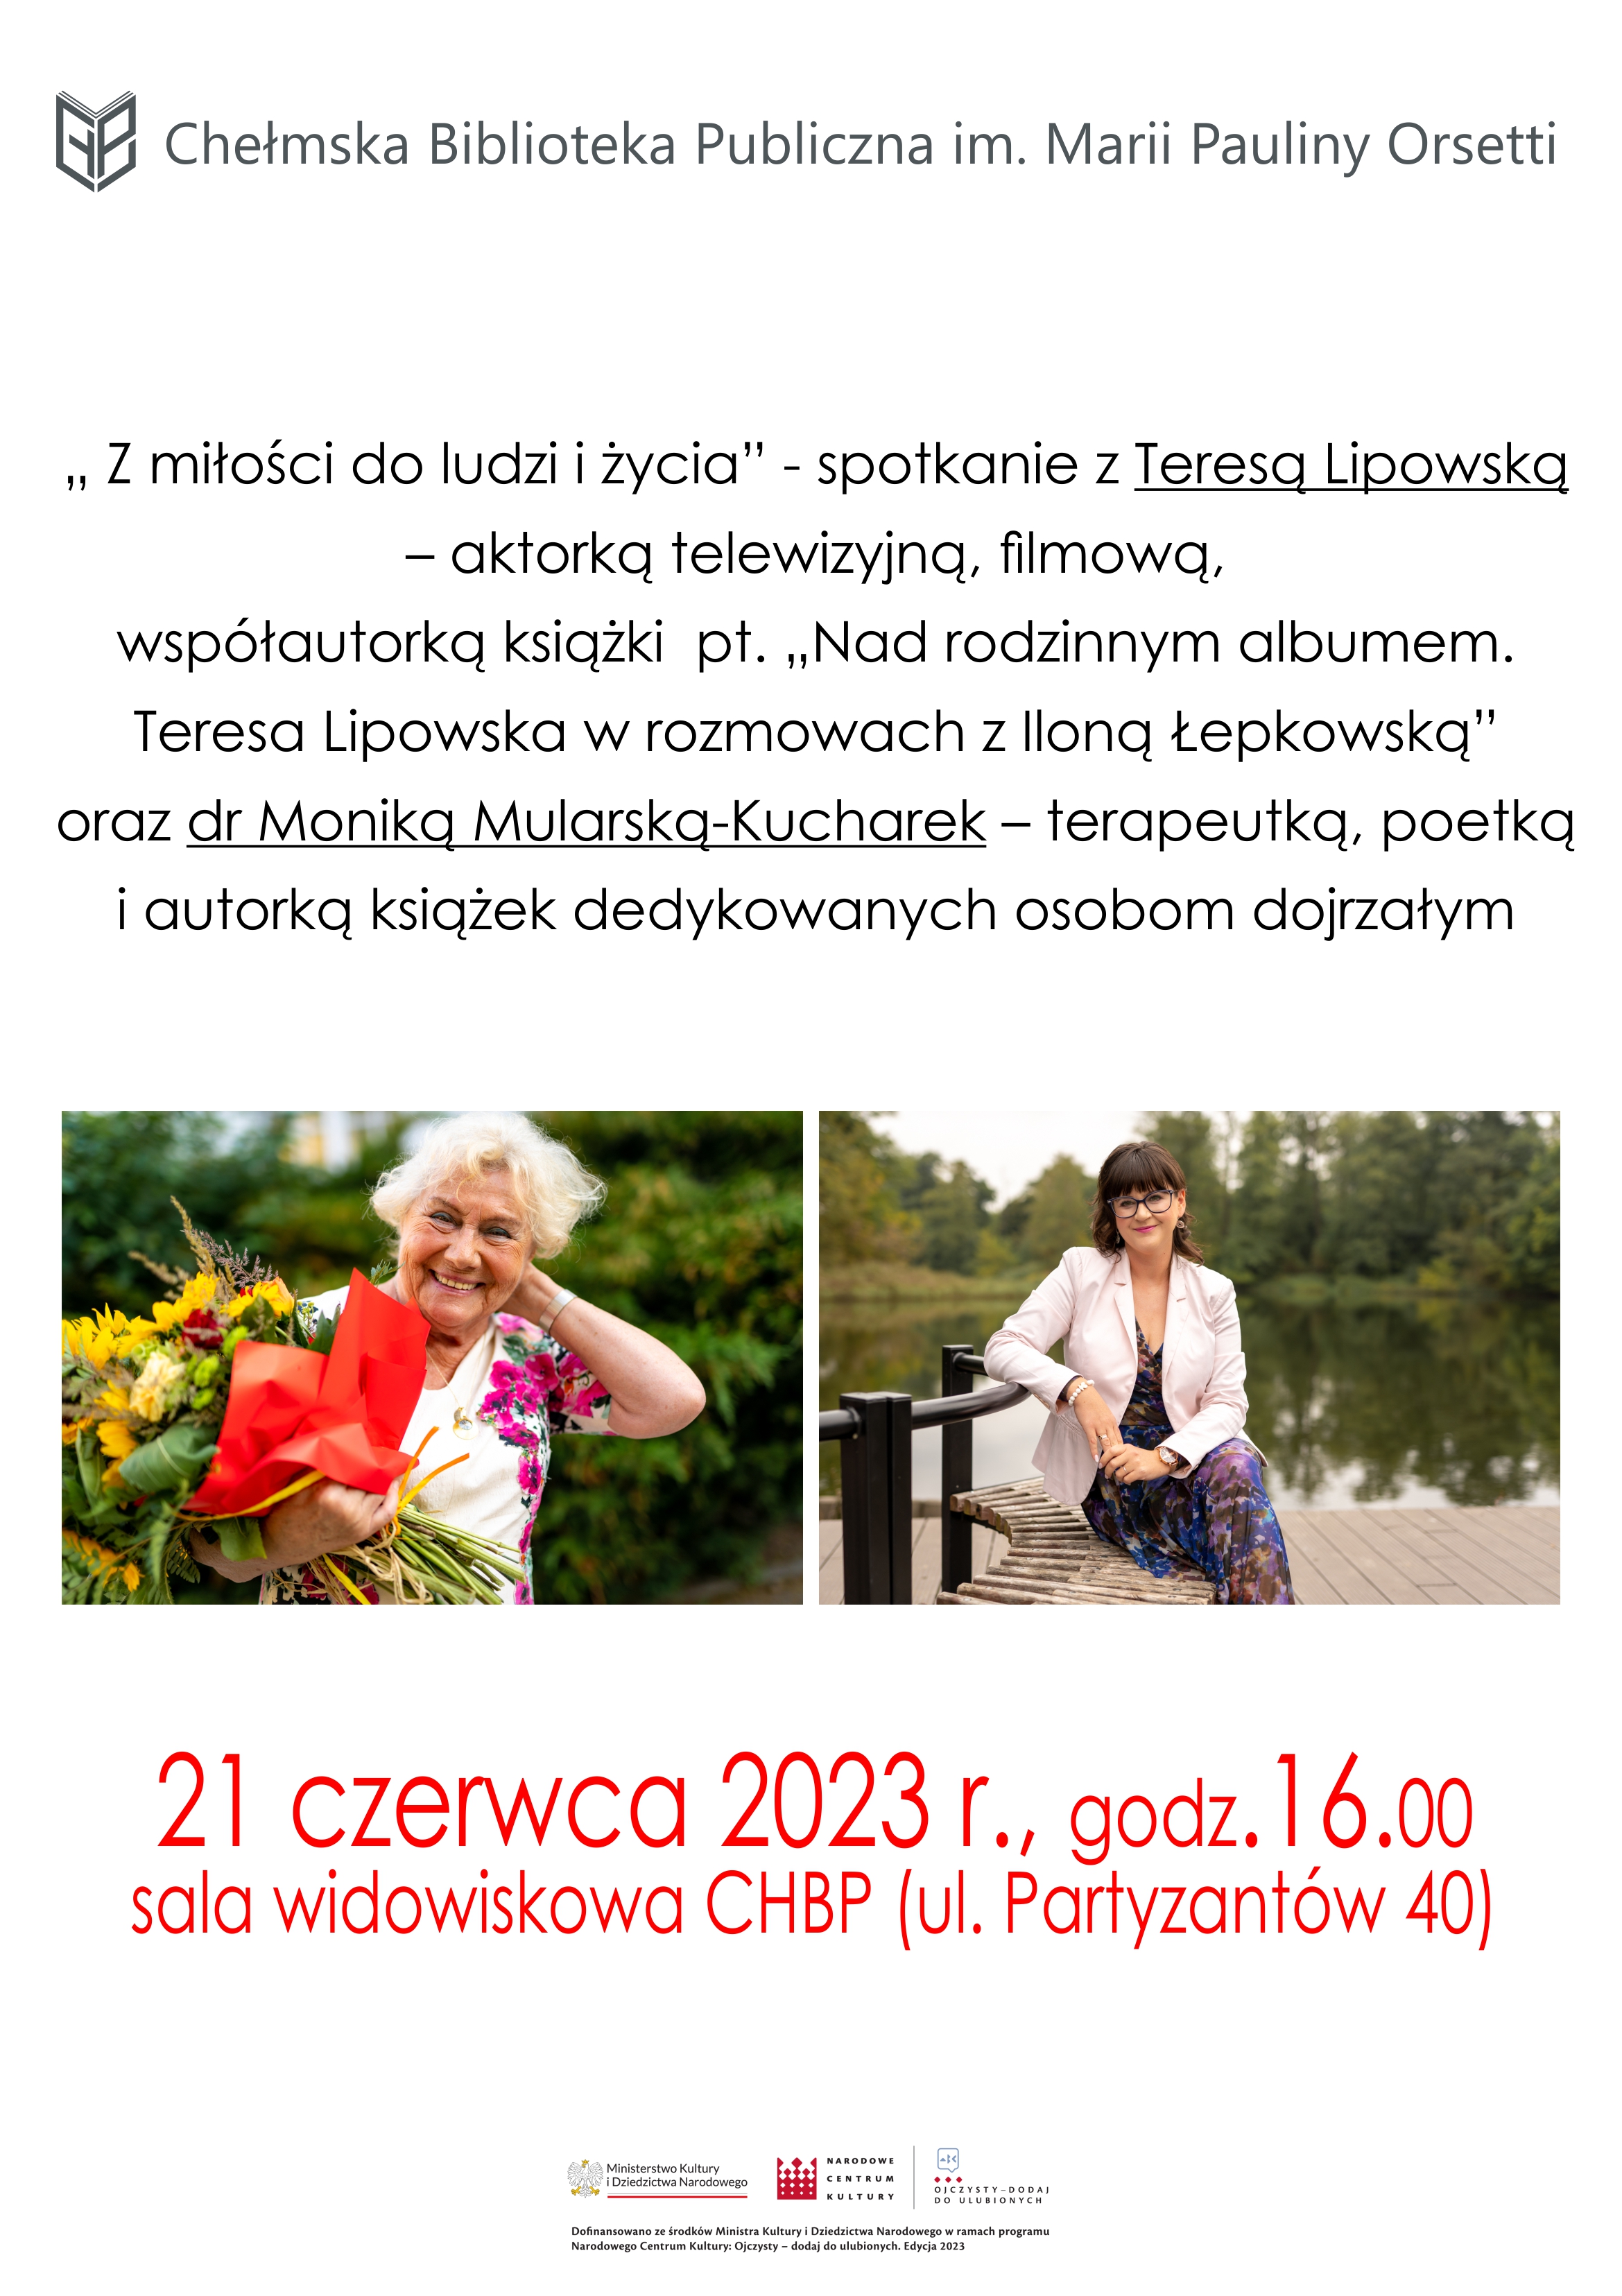 Spotkanie z Teresą Lipowską 21 czerwca o godz. 16.00 w sali widowiskowej ChBP